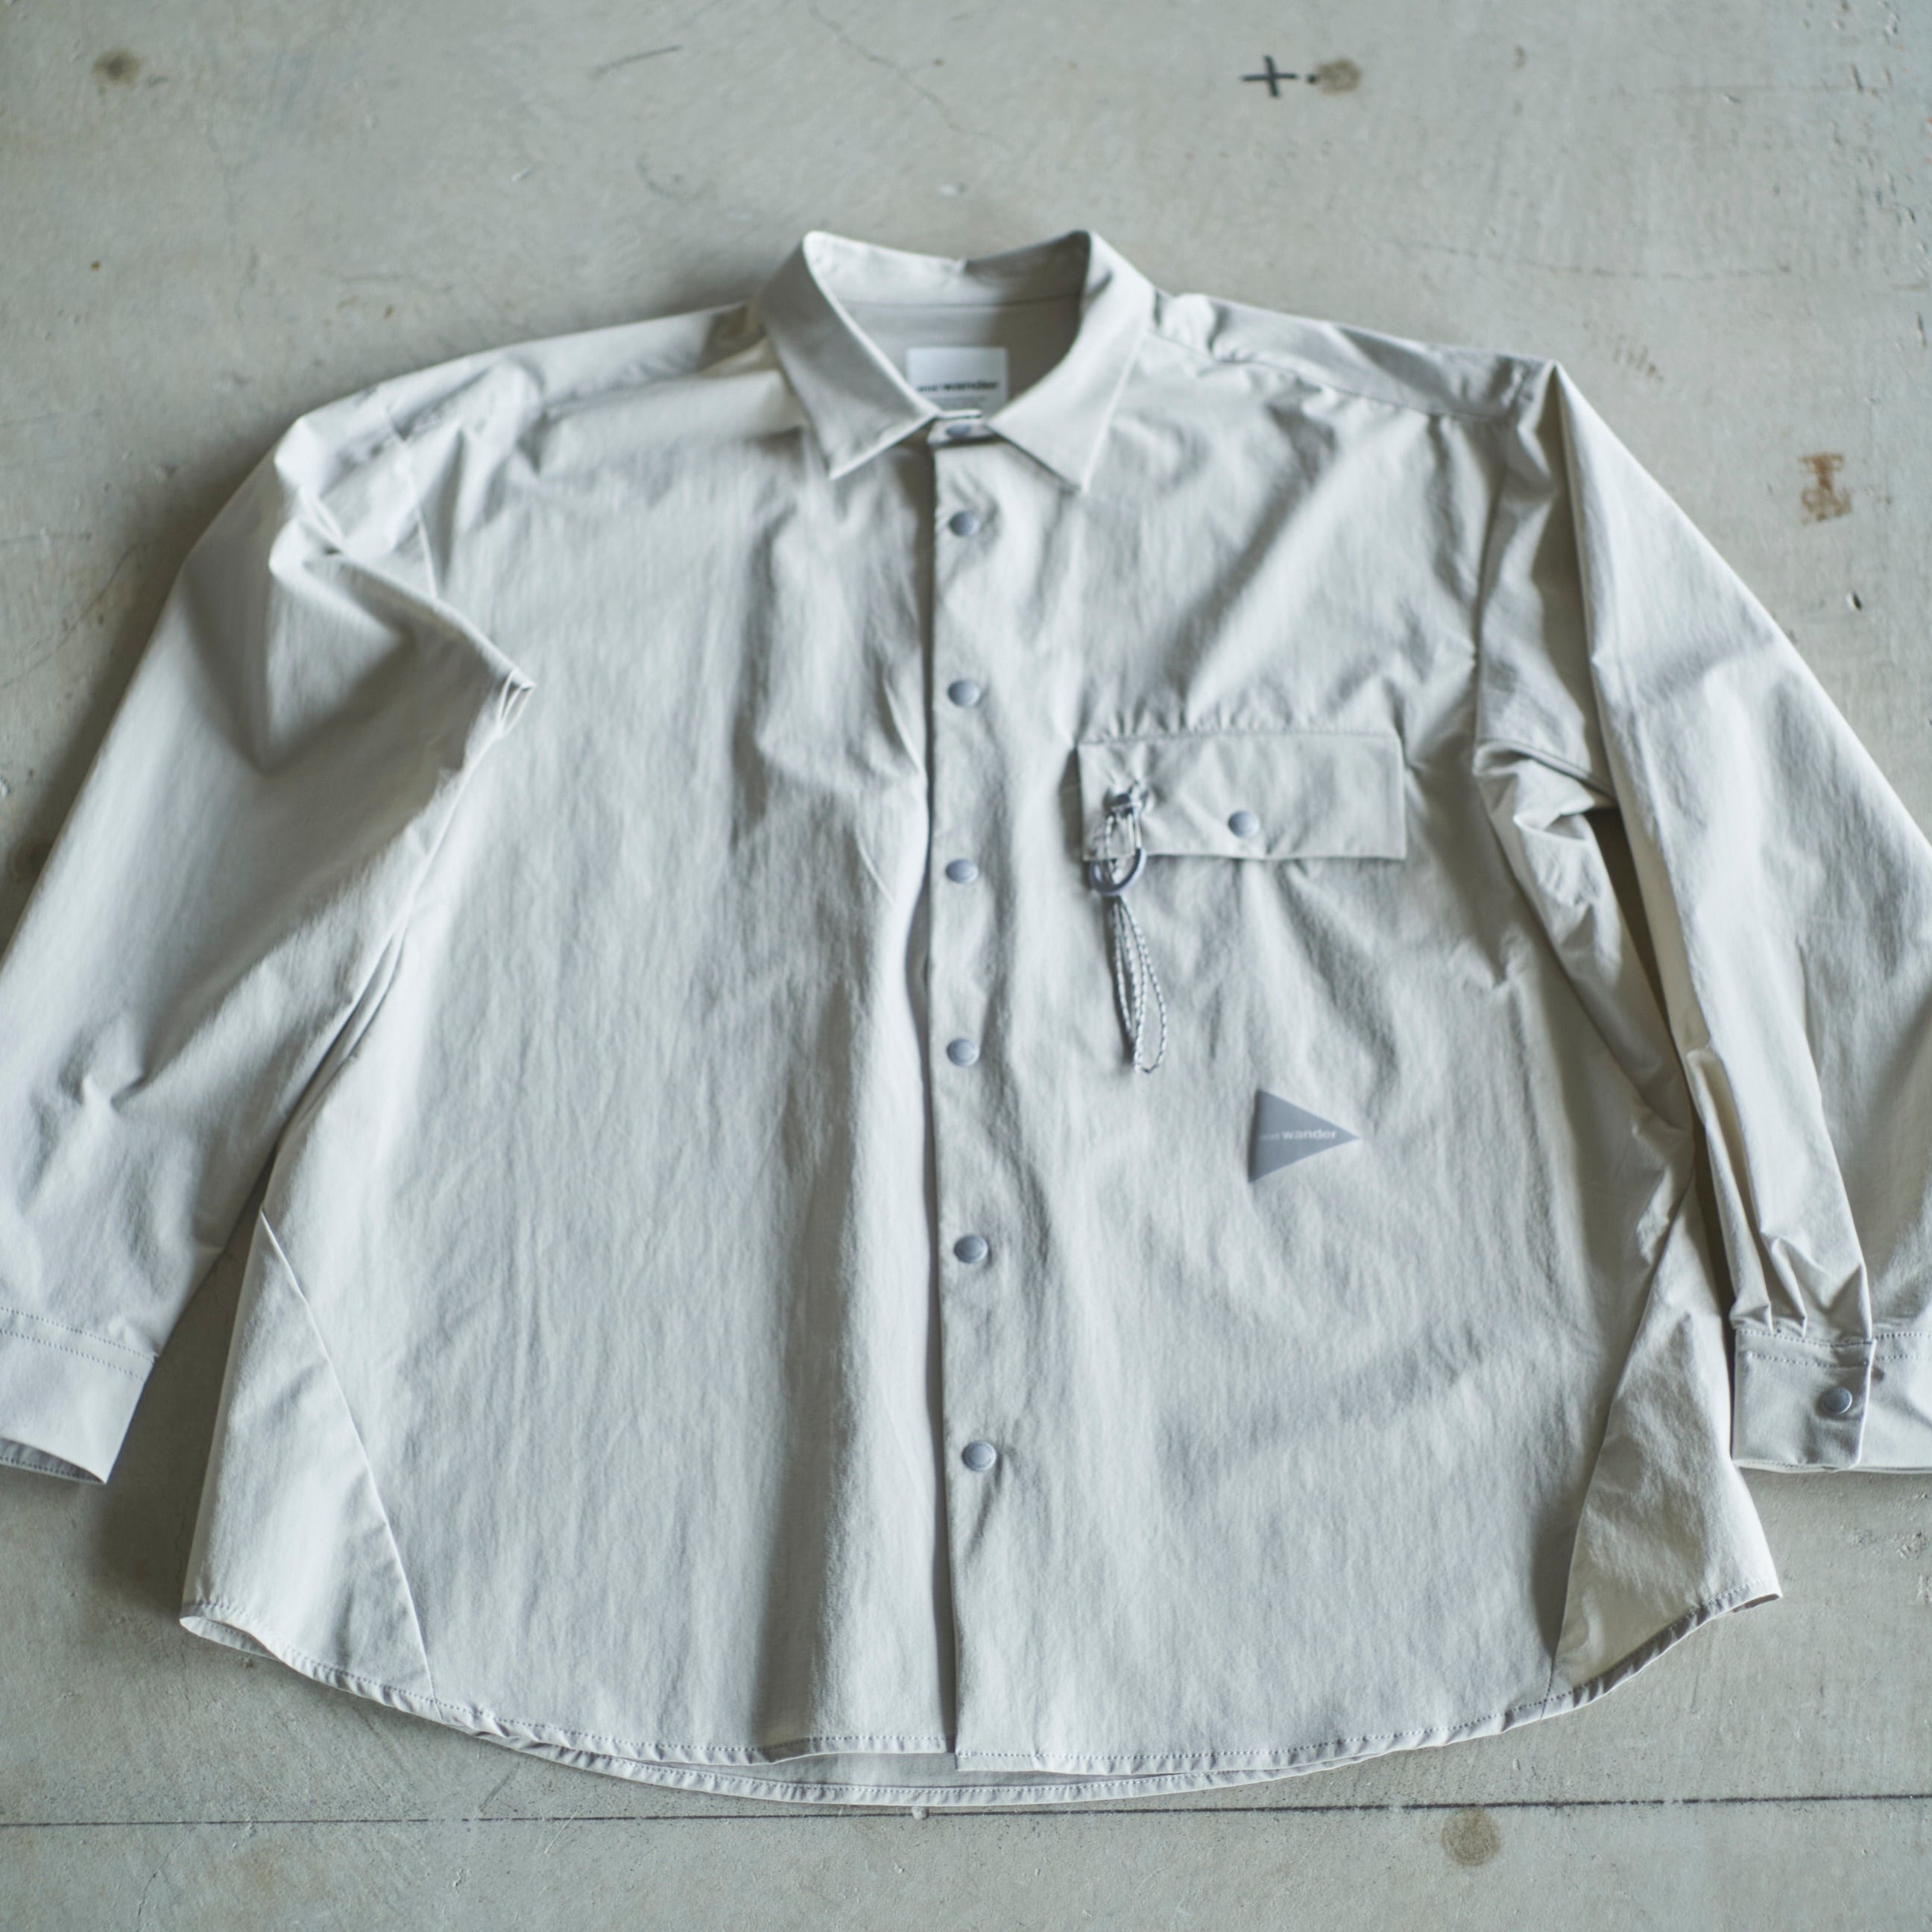 andwander / light w cloth shirt